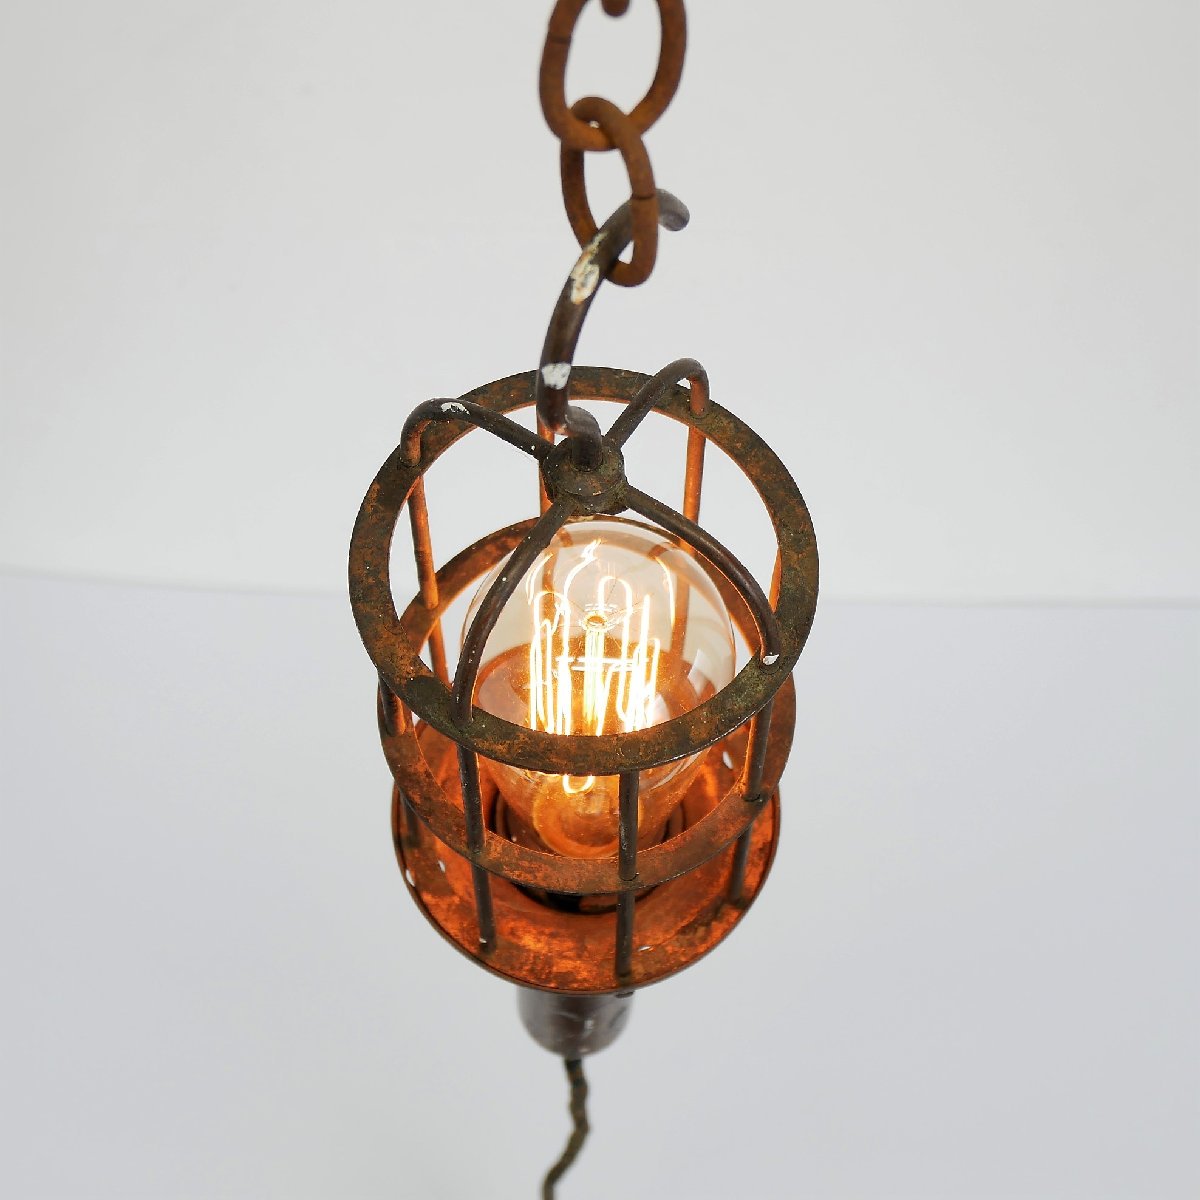 1920s-30s アメリカ ハンドランプ アンティーク ヴィンテージ 照明 